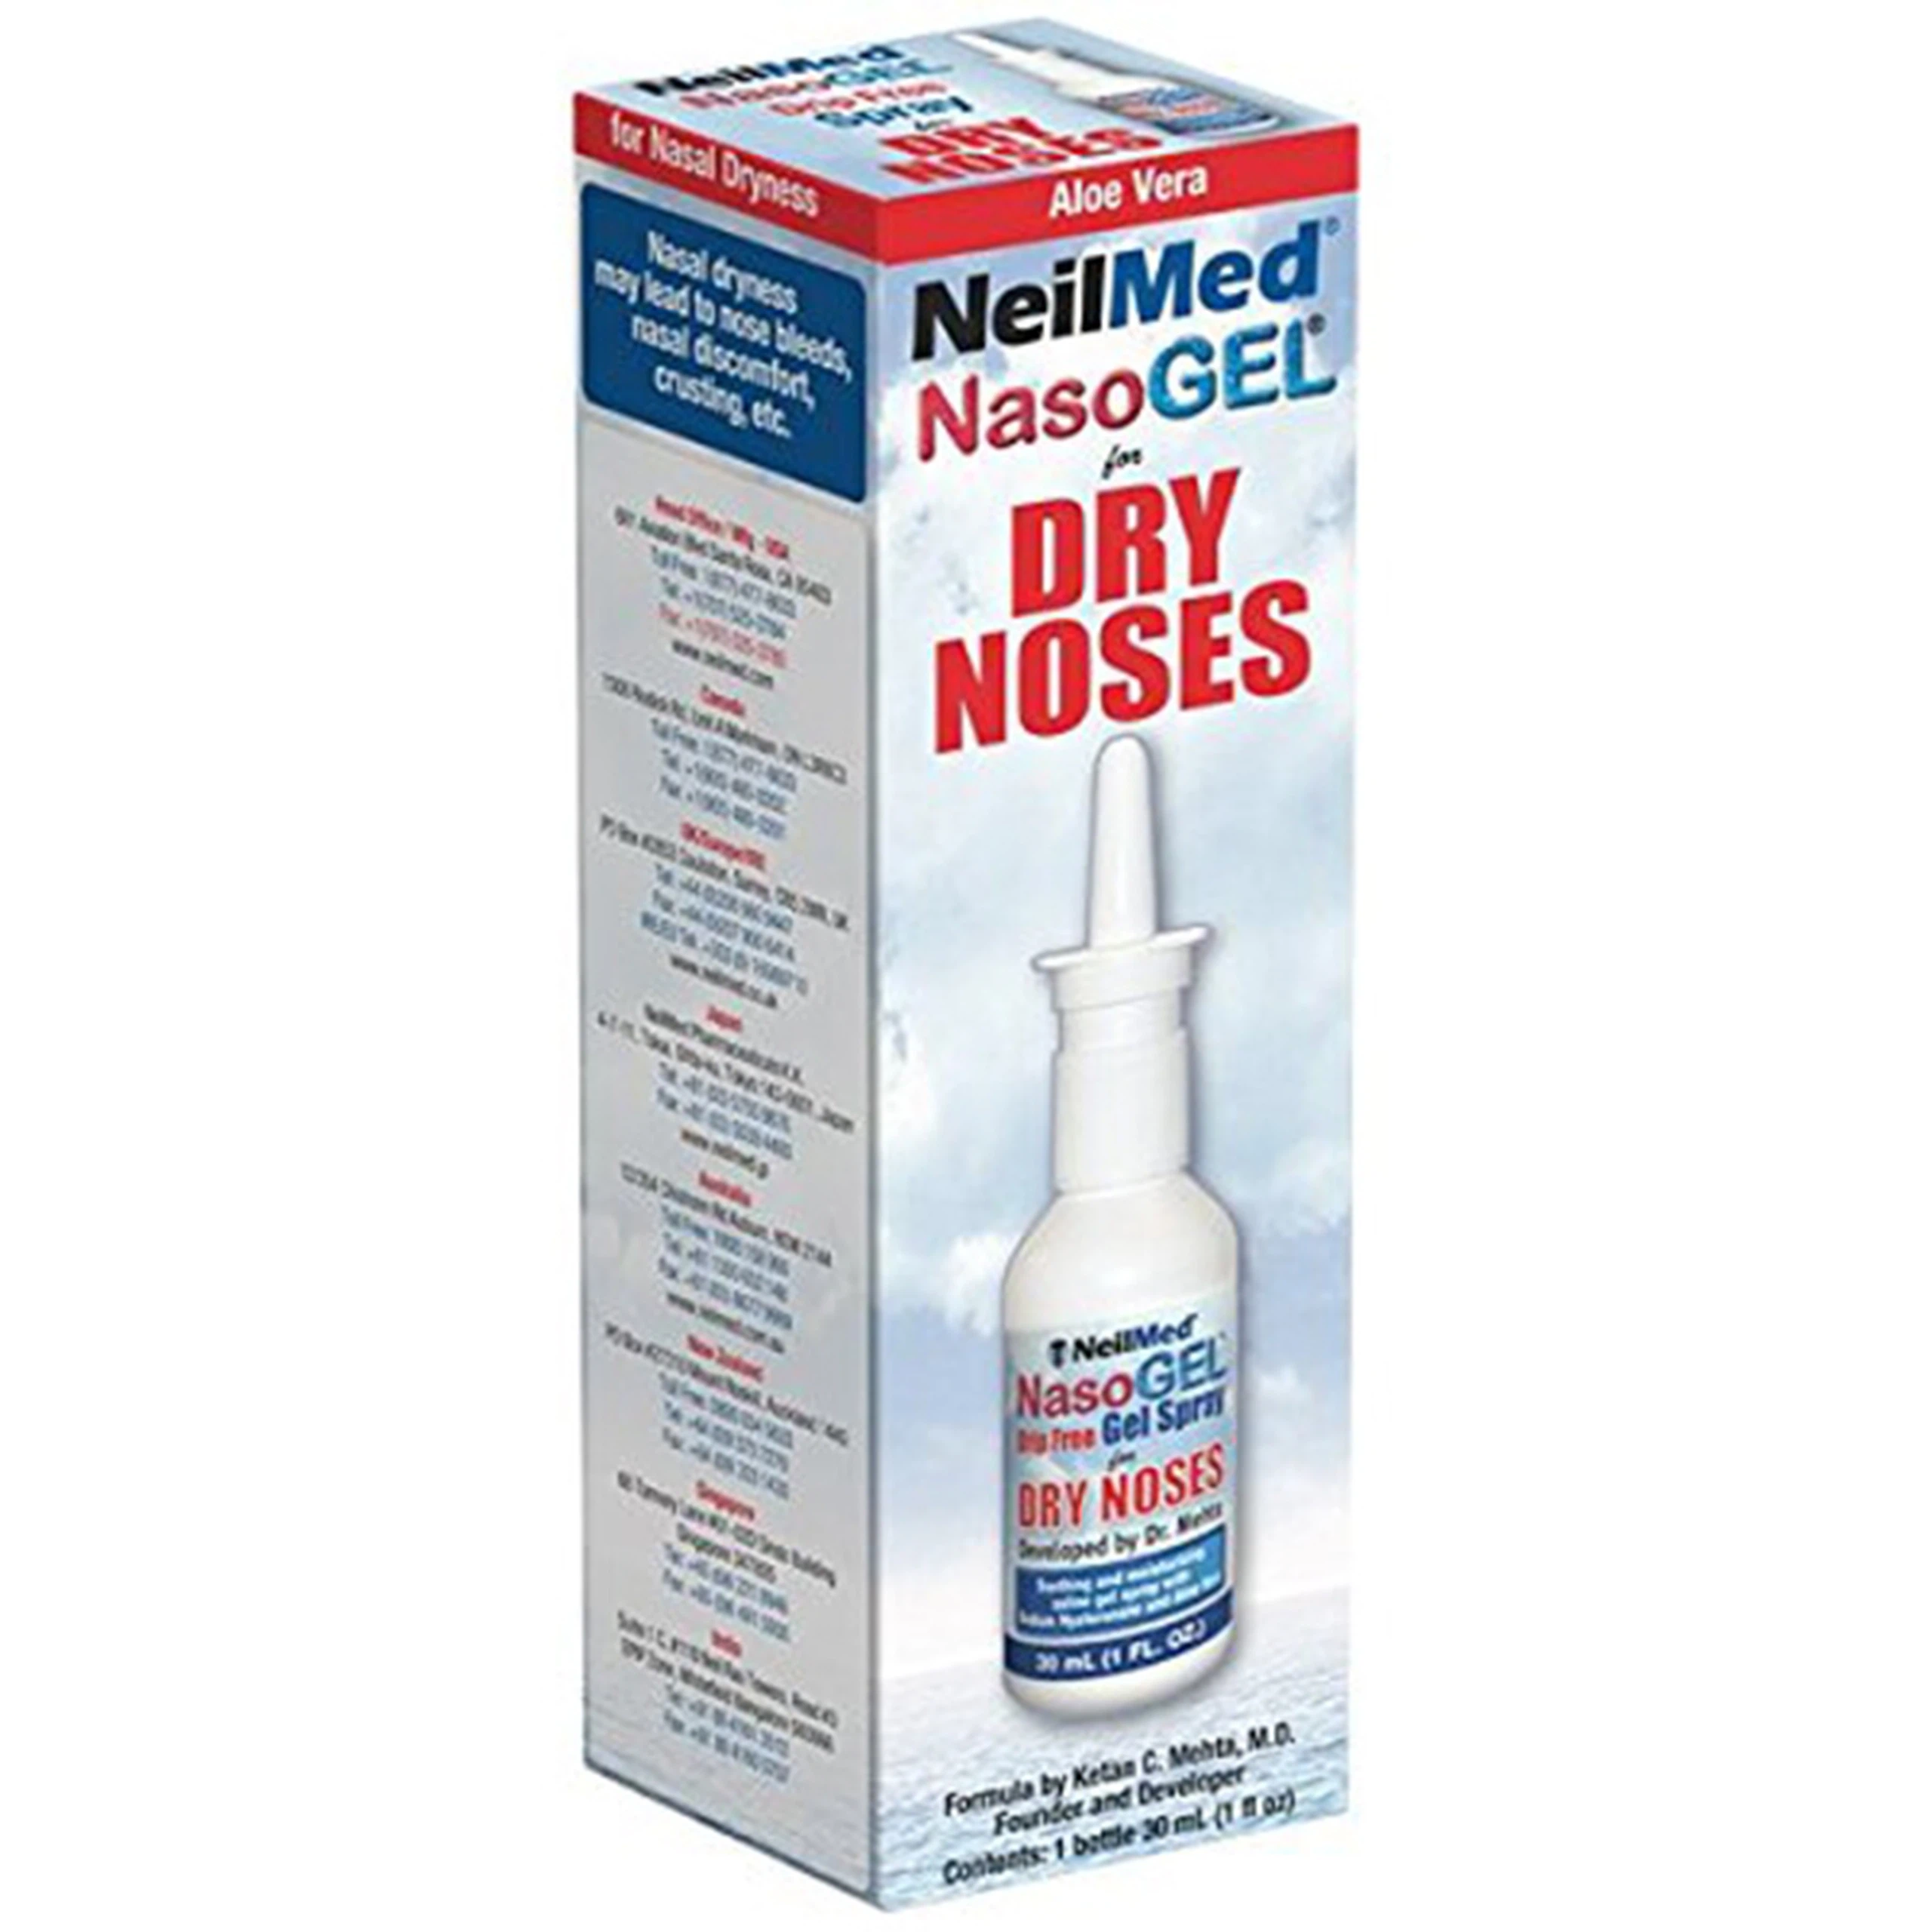 Dung dịch xịt mũi Neilmed NasoGel For Dry Noses chống khô mũi, làm ẩm và làm dịu (30ml)